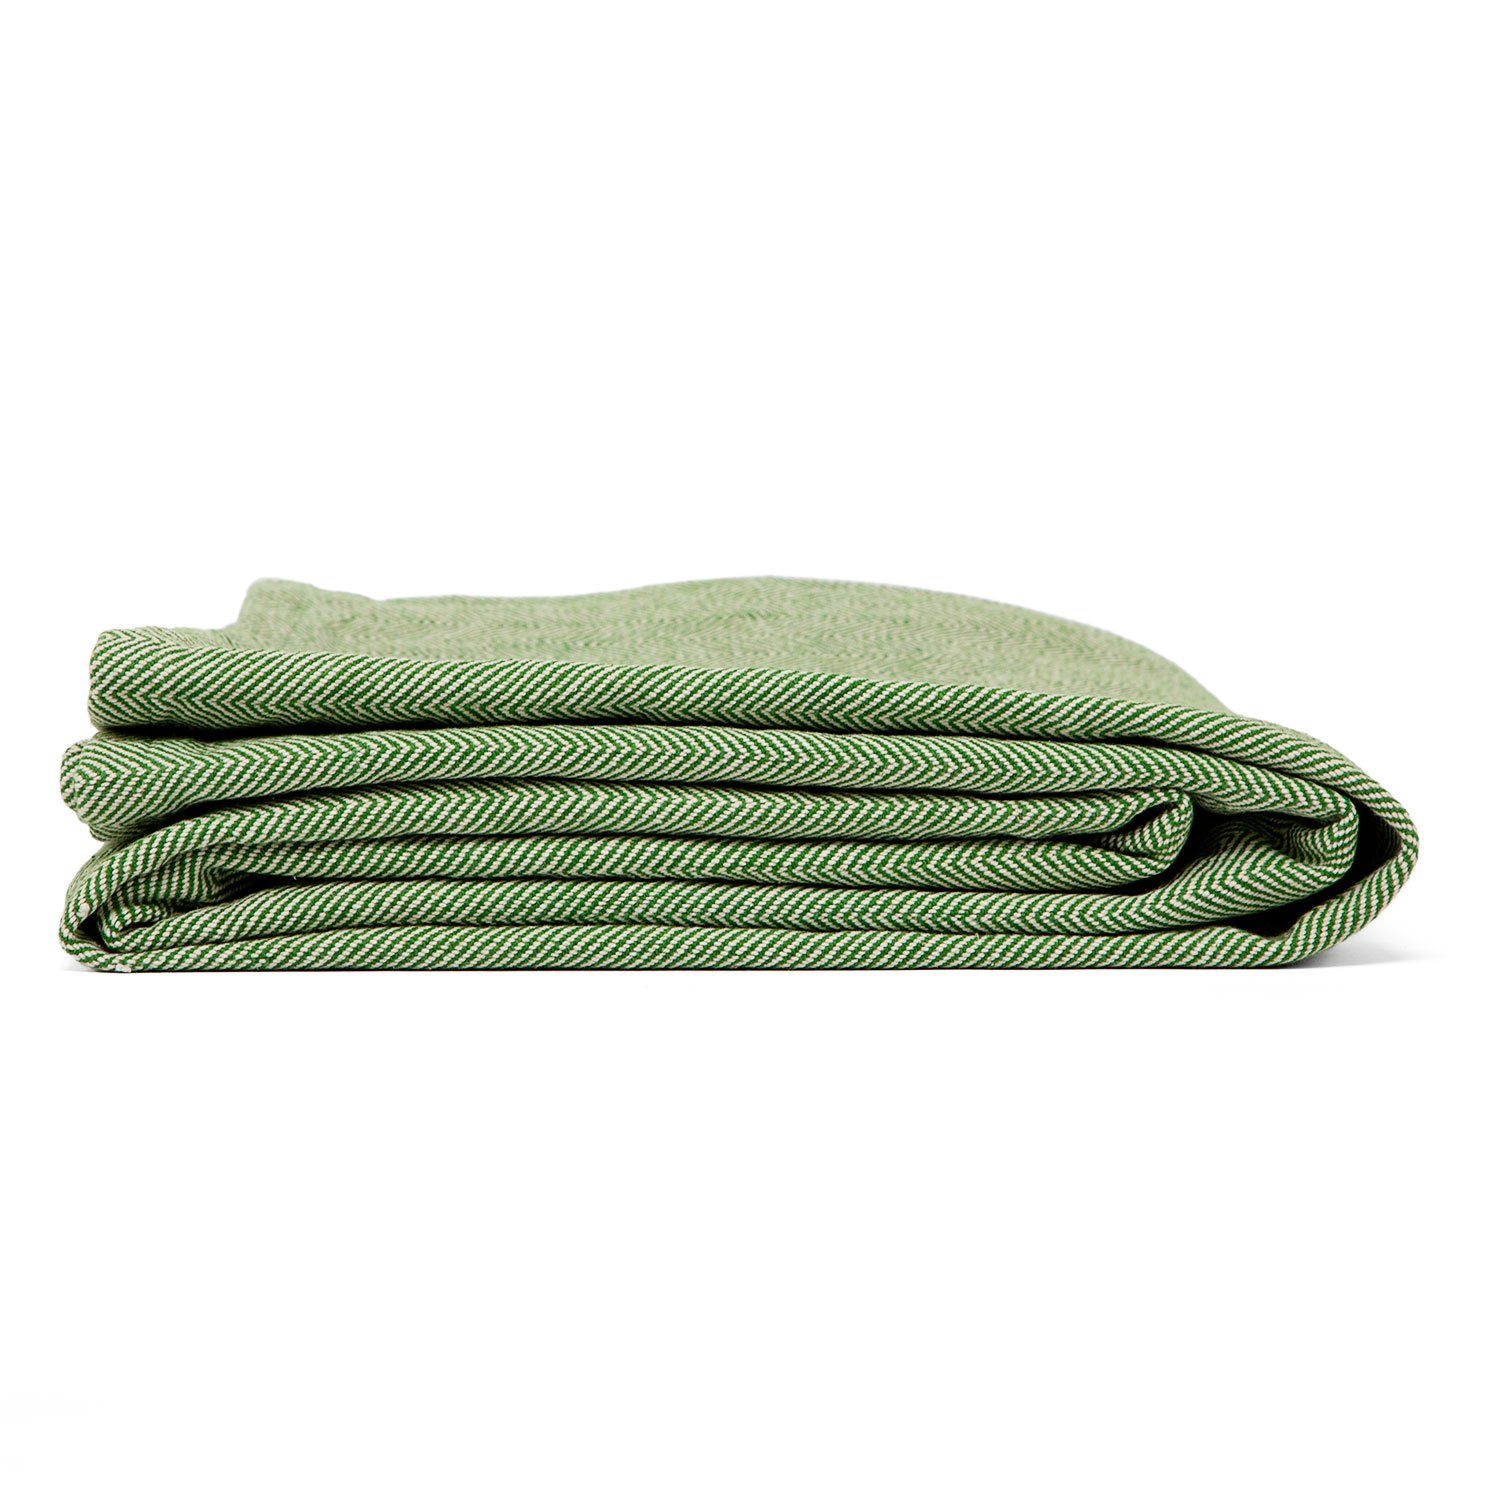 Wohndecke NIDRA Baumwolldecke für Yoga, natur/olivgrün, natur-olivgrün Fischgrätmuster bodhi